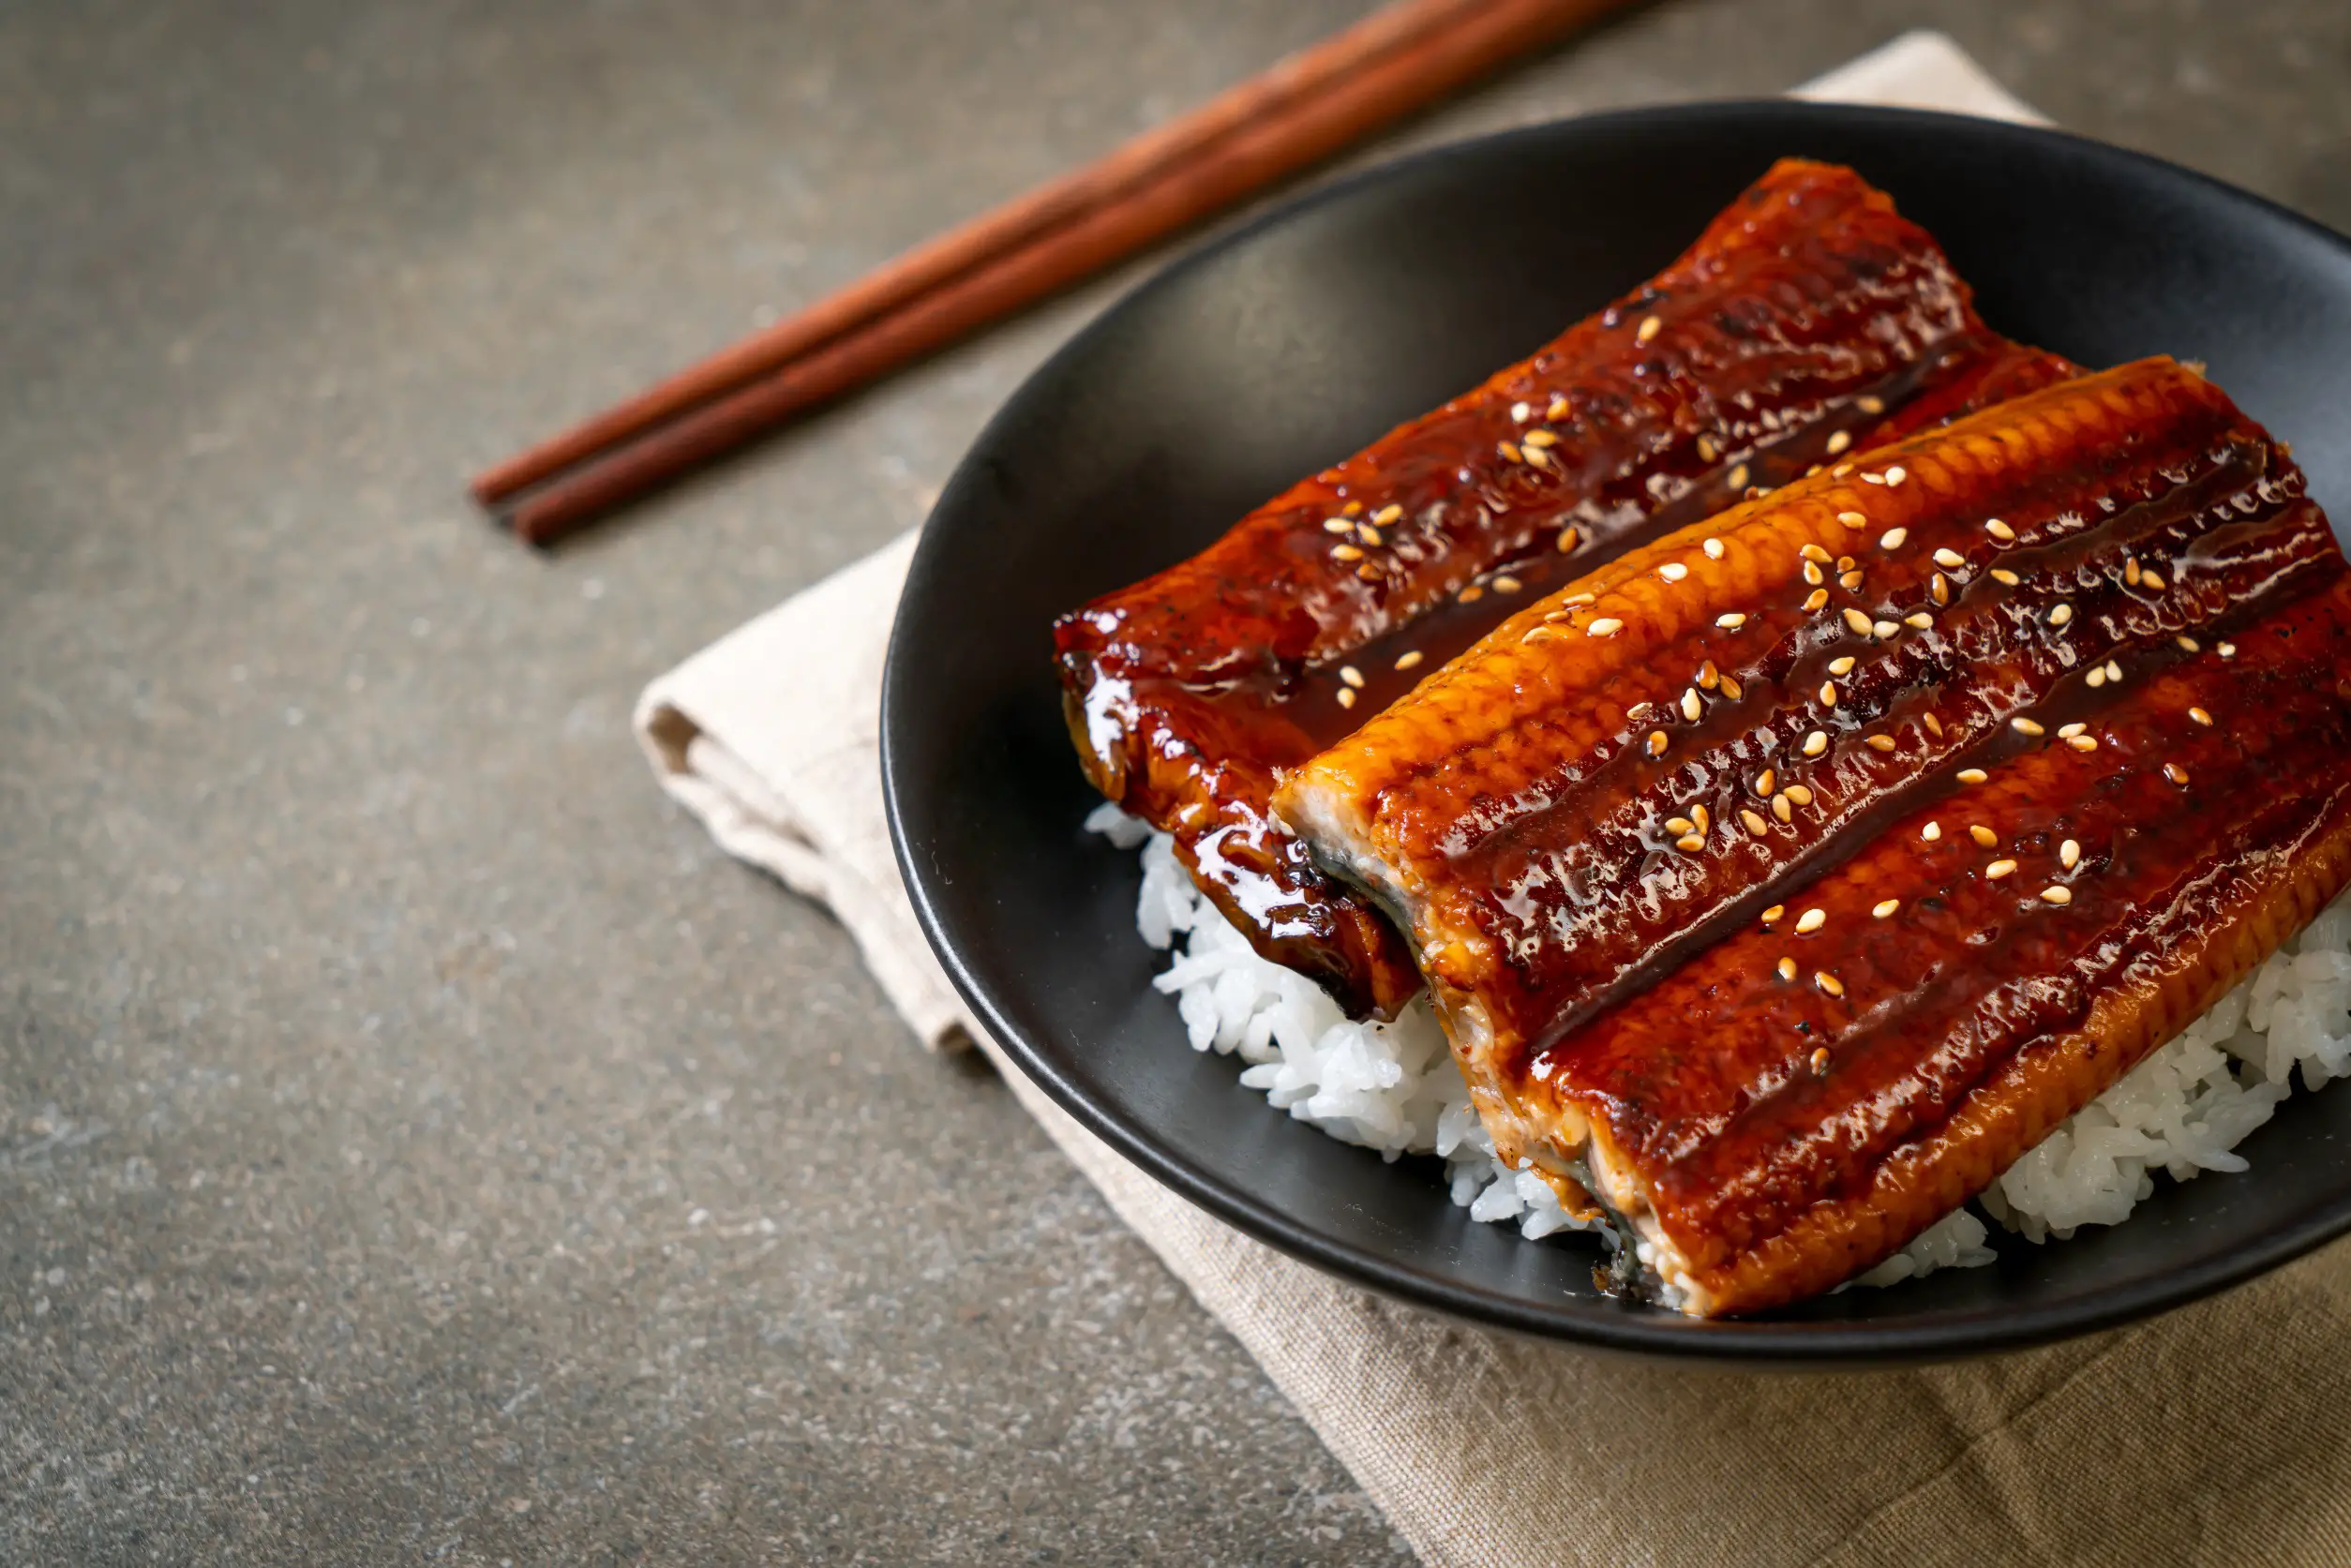 Unagi, or eel, sashimi on rice